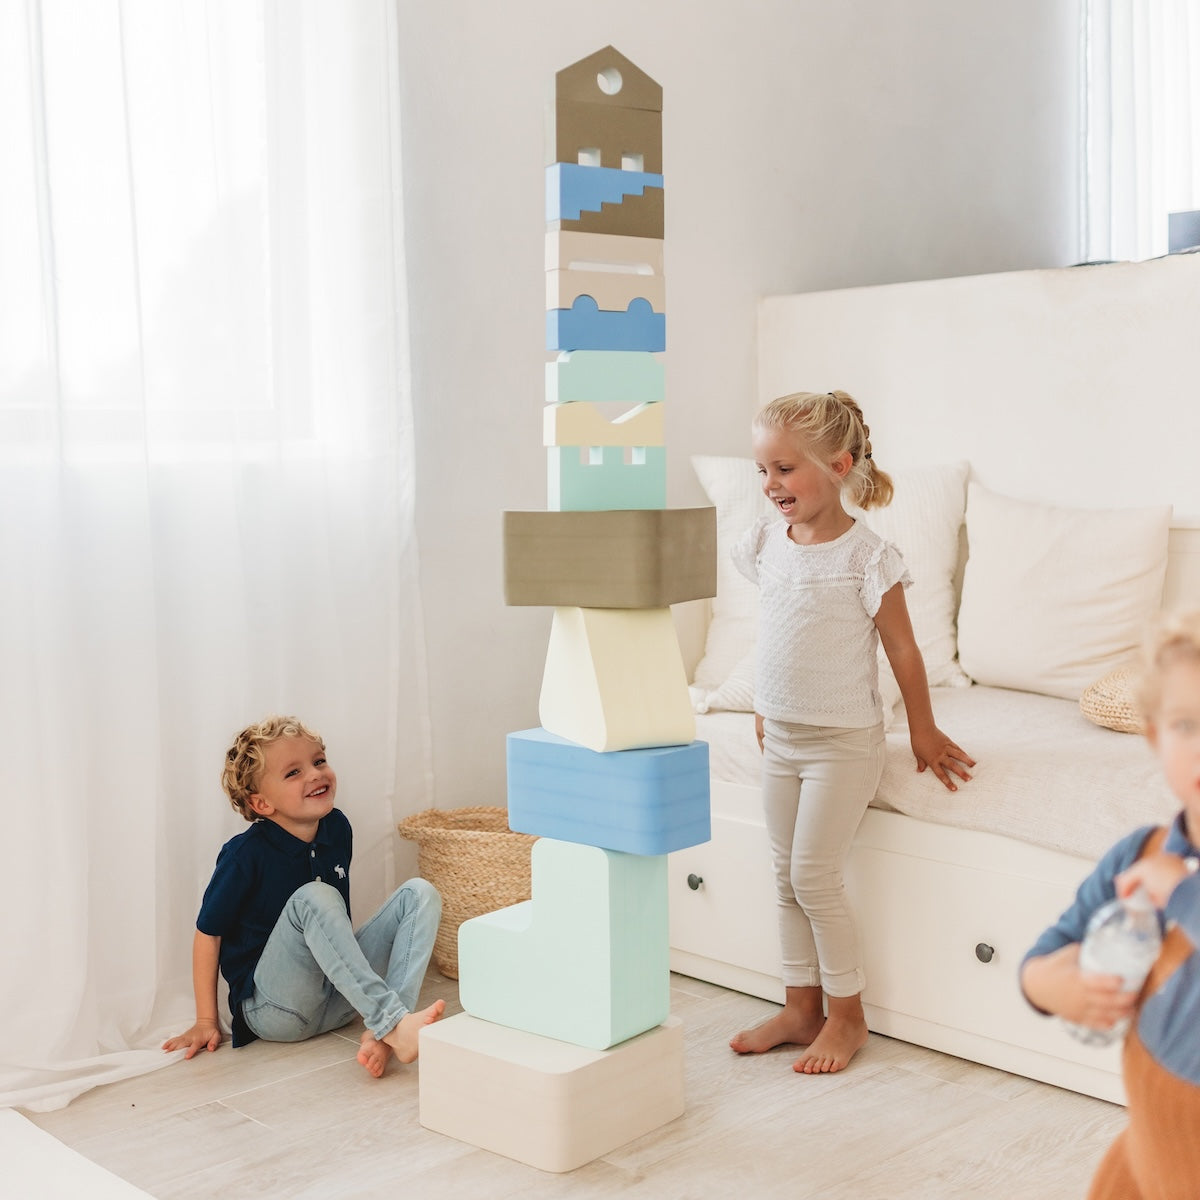 Met het Moes Play Rectangle sky speelblok leert je kindje creatief spelen en wordt de motoriek op een originele manier gestimuleerd. Het speelblok is multifunctioneel en kan op verschillende manieren worden gebruikt om mee te spelen. VanZus